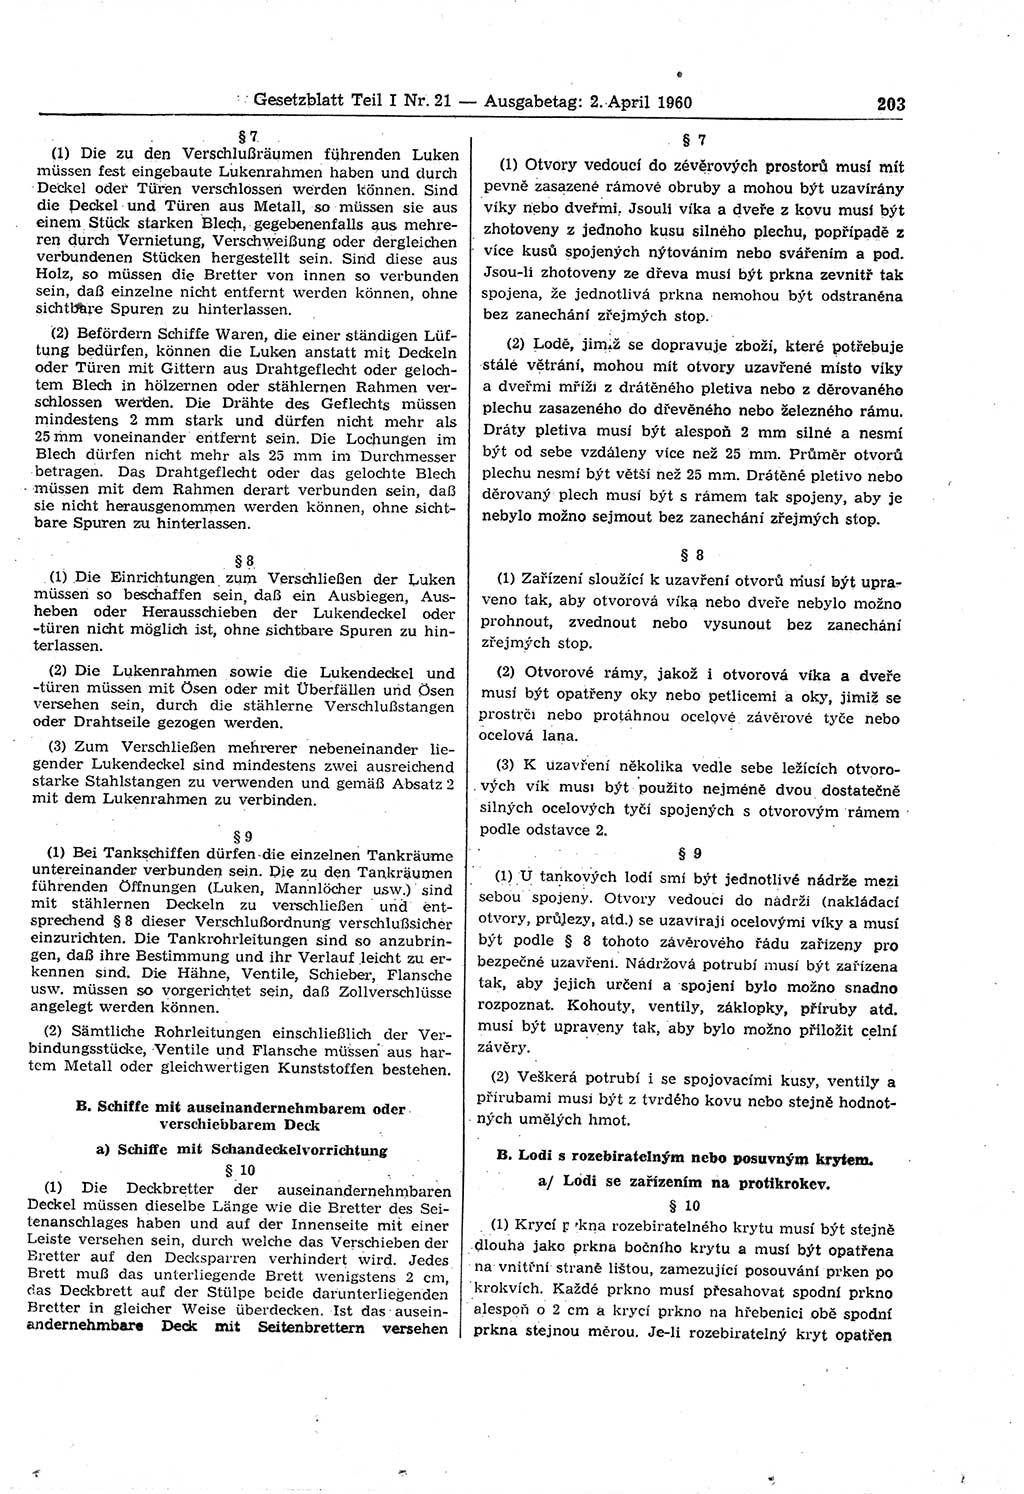 Gesetzblatt (GBl.) der Deutschen Demokratischen Republik (DDR) Teil Ⅰ 1960, Seite 203 (GBl. DDR Ⅰ 1960, S. 203)